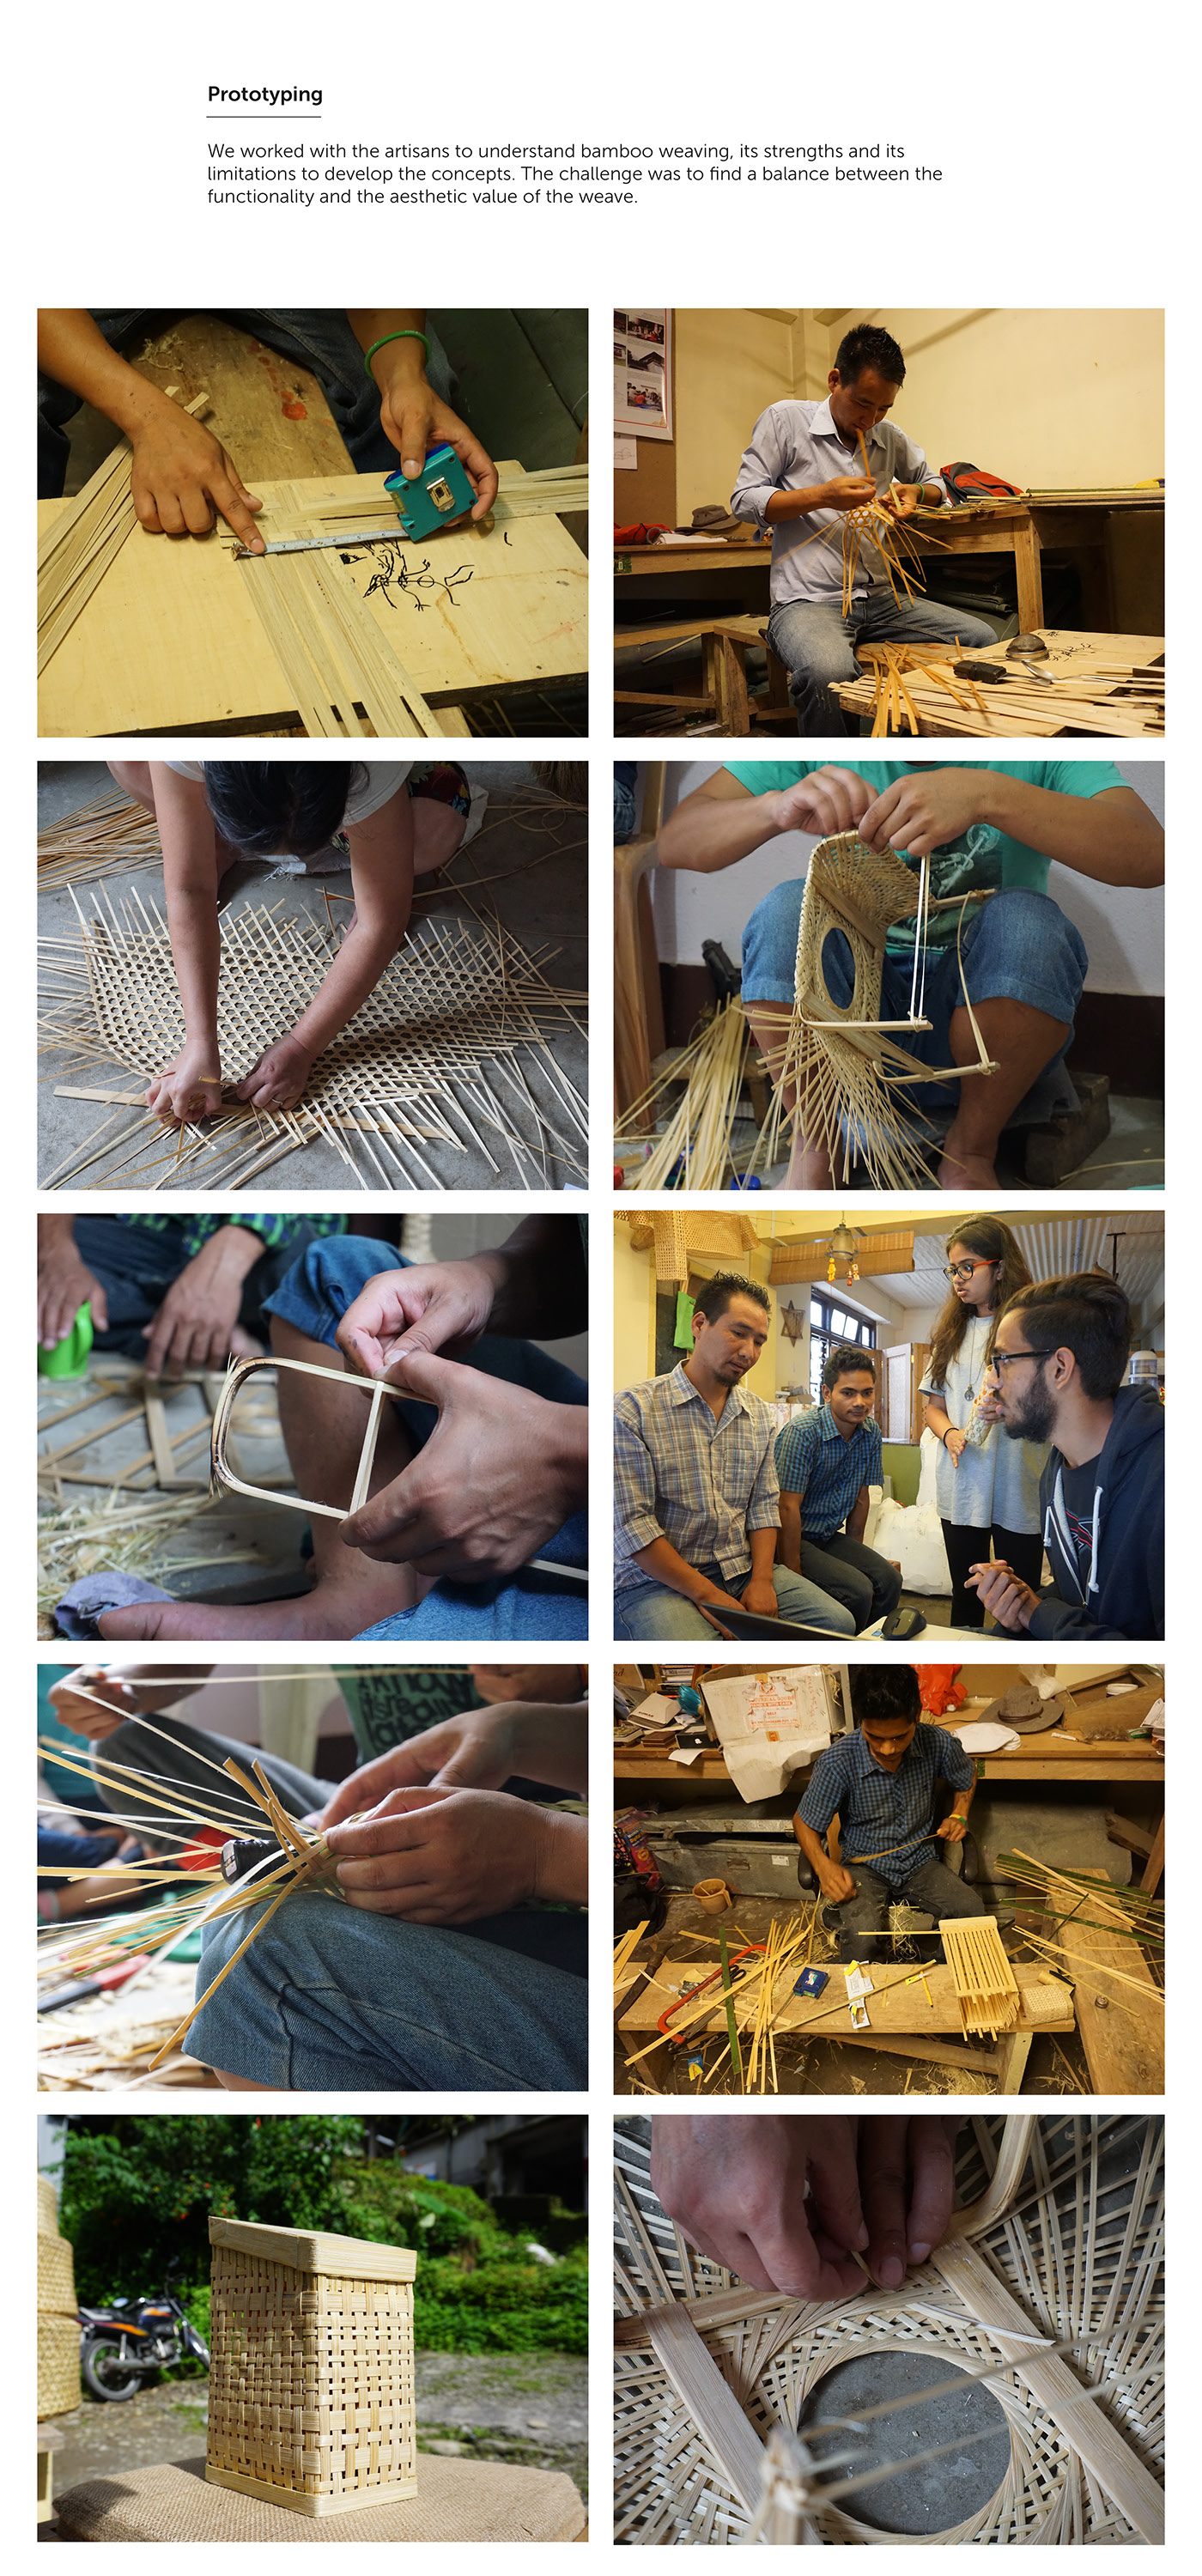 products wine rack Planter herb garden Echostream bamboo weave craft SIKKIM kitchen